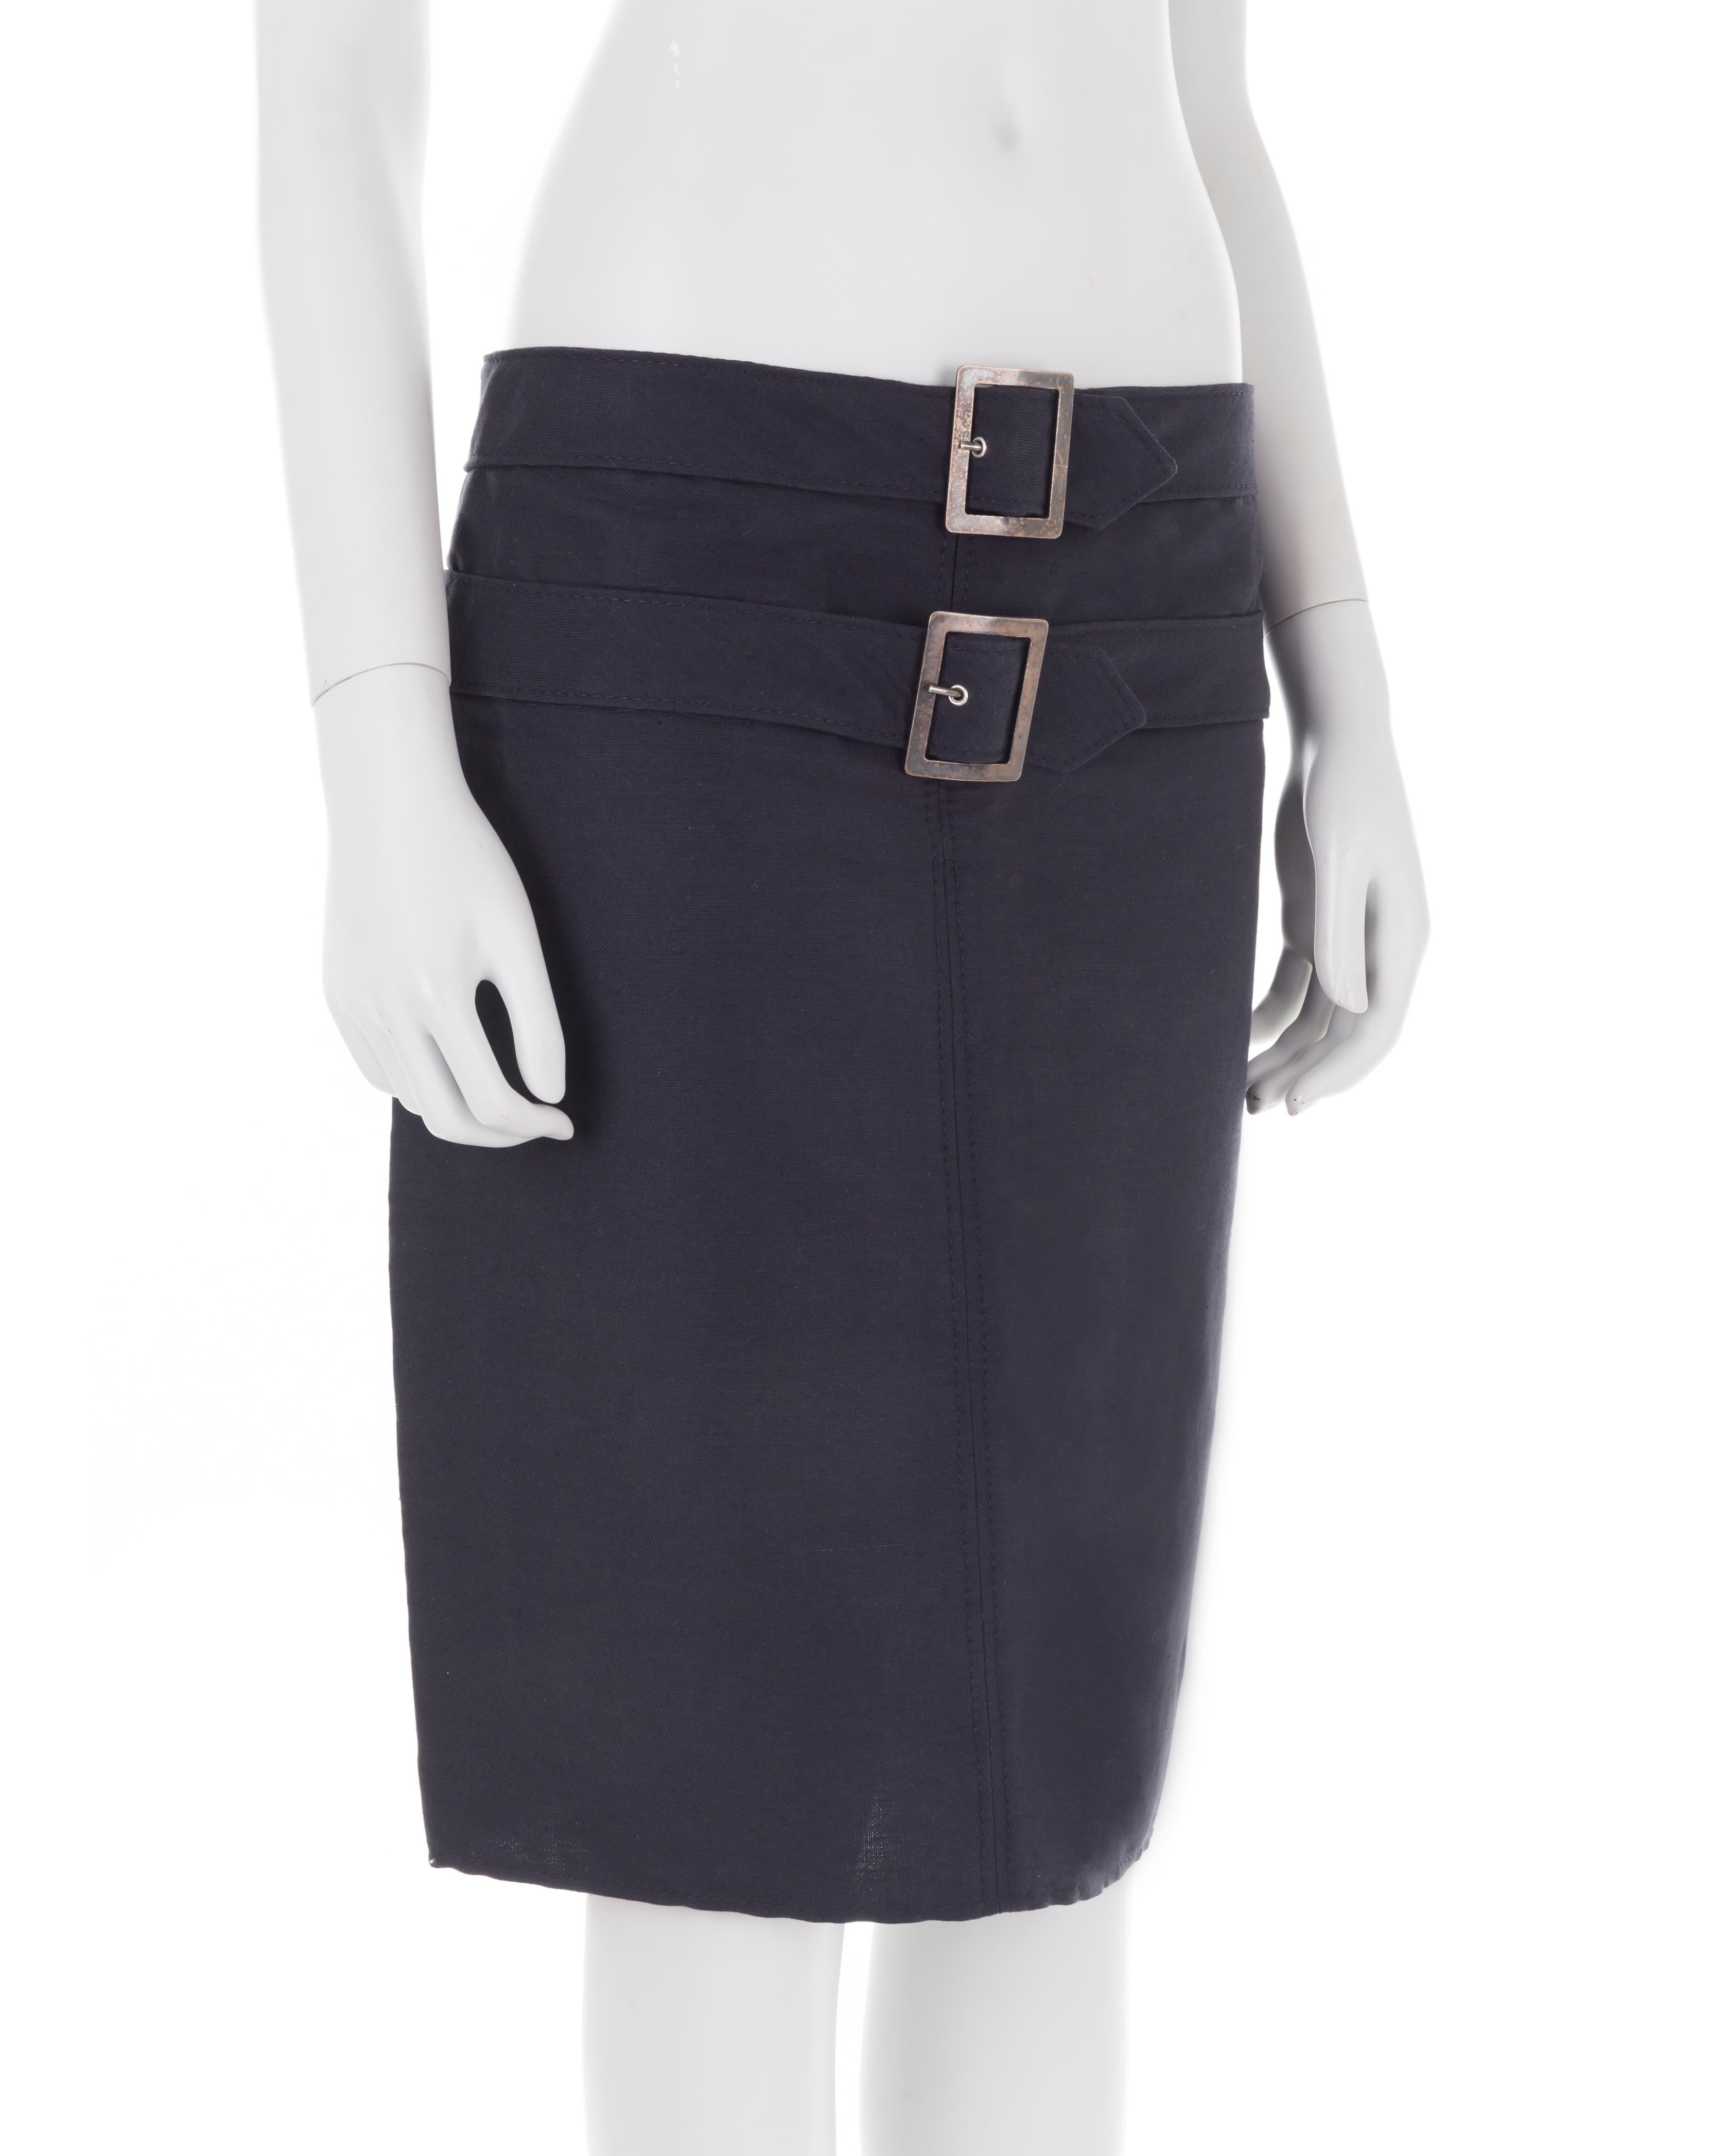 Black Valentino S/S 2004 navy blue double belt skirt For Sale